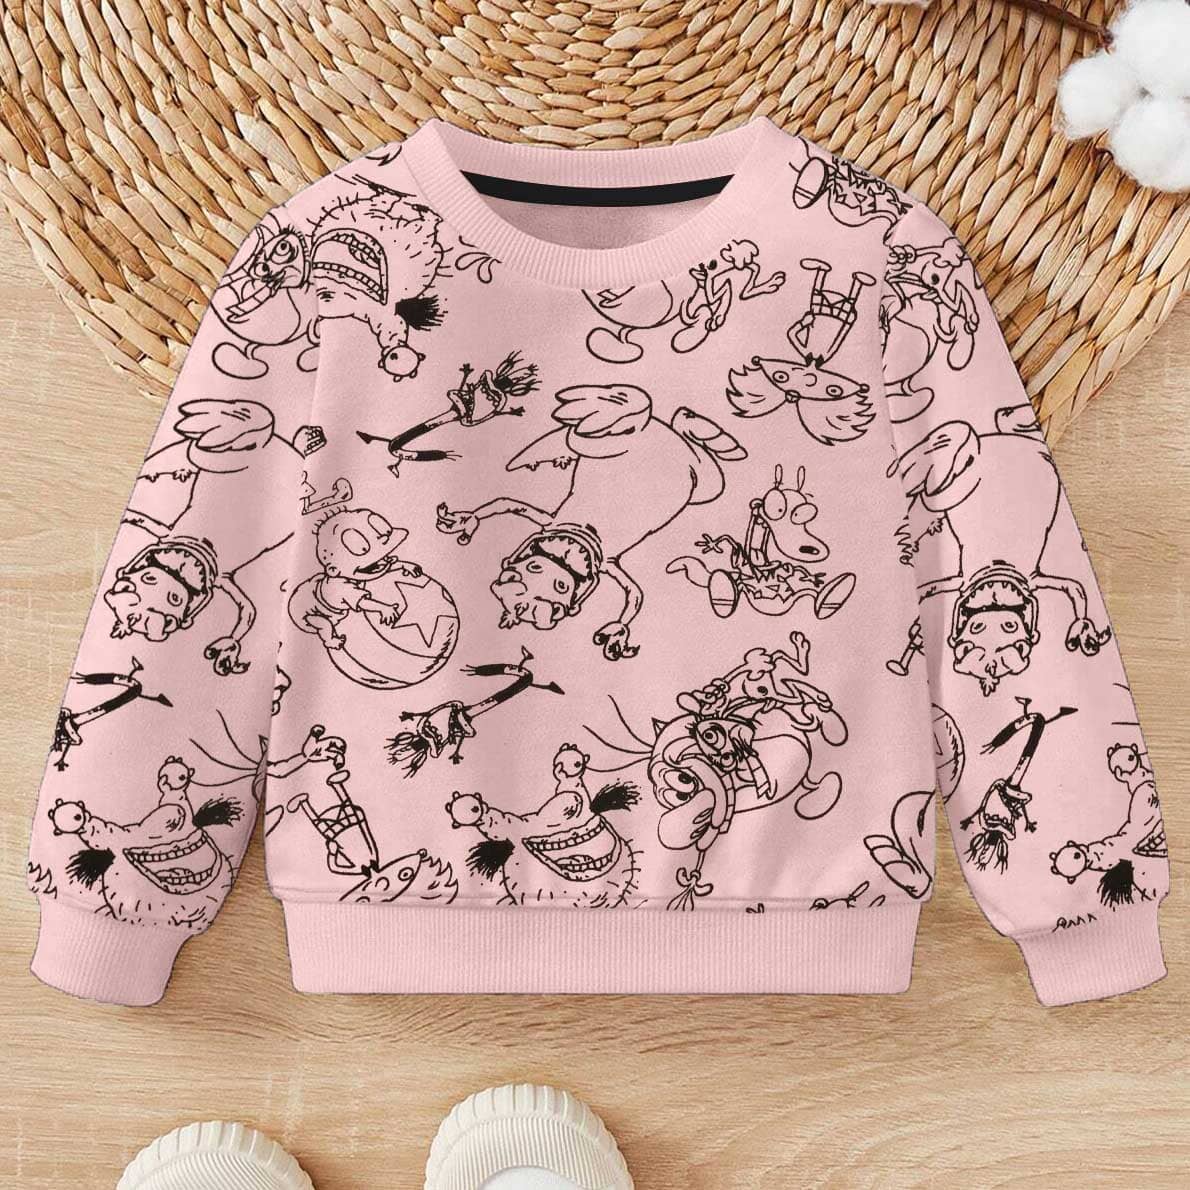 Kid's Cartoon Charecters Printed Fleece Sweat Shirt Boy's Sweat Shirt SNR Pink 9-12 Months 